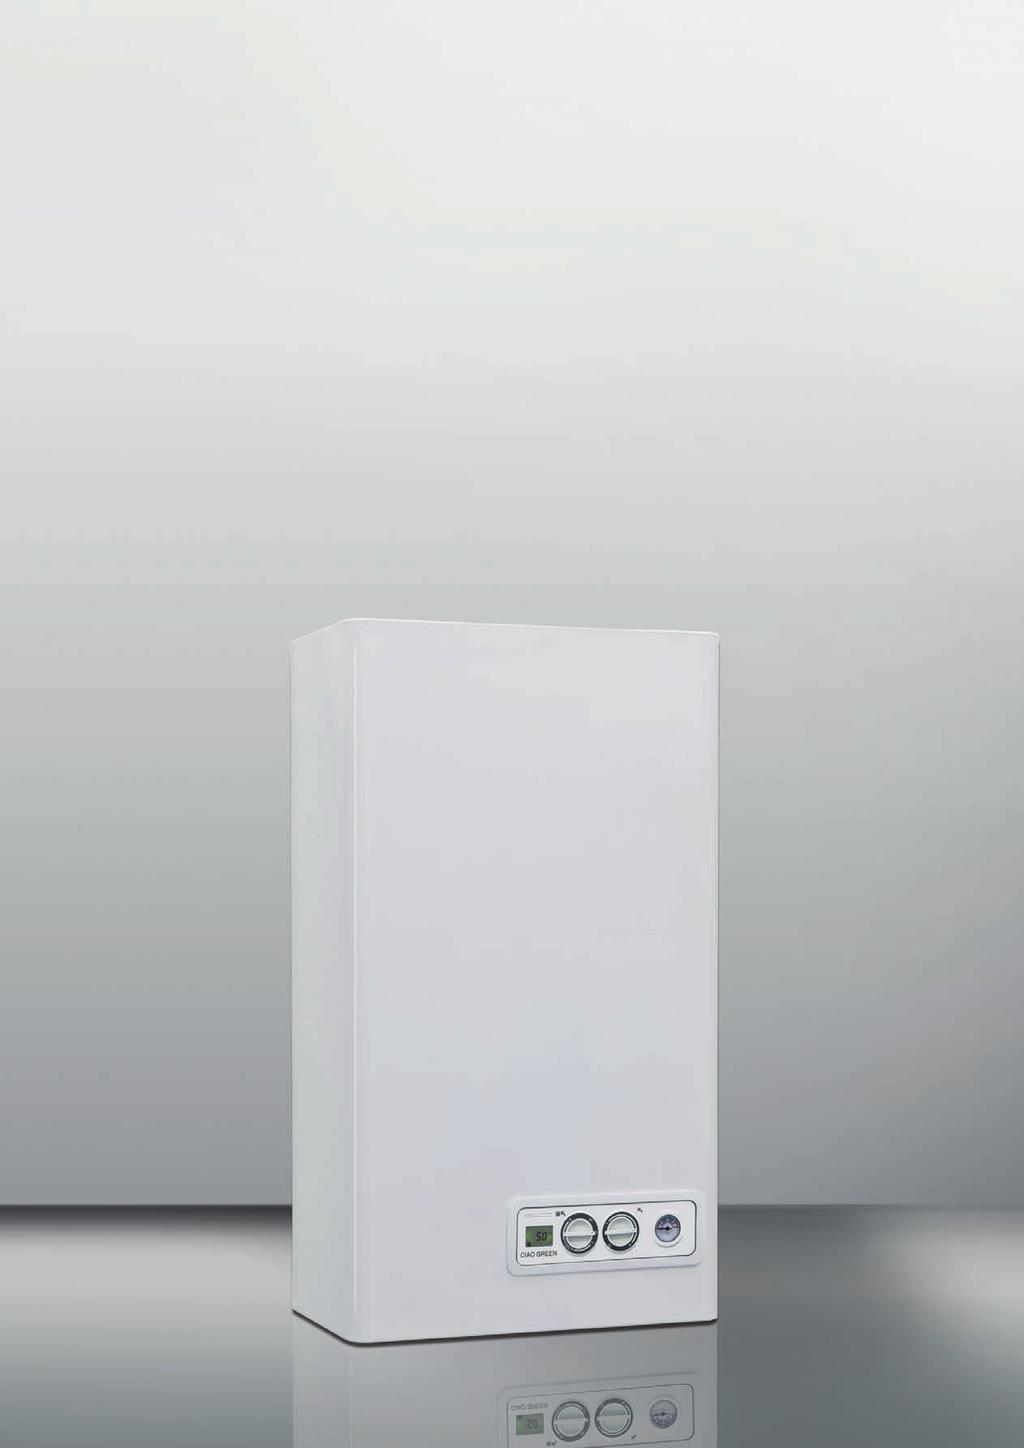 Beretta presenta CIAO GREEN caldaie ErP con circolatore basso consumo (EEI < 0,20) Scambiatore condensante in alluminio, due versioni da 25 kw e 29 kw combinate e una 25 kw solo riscaldamento